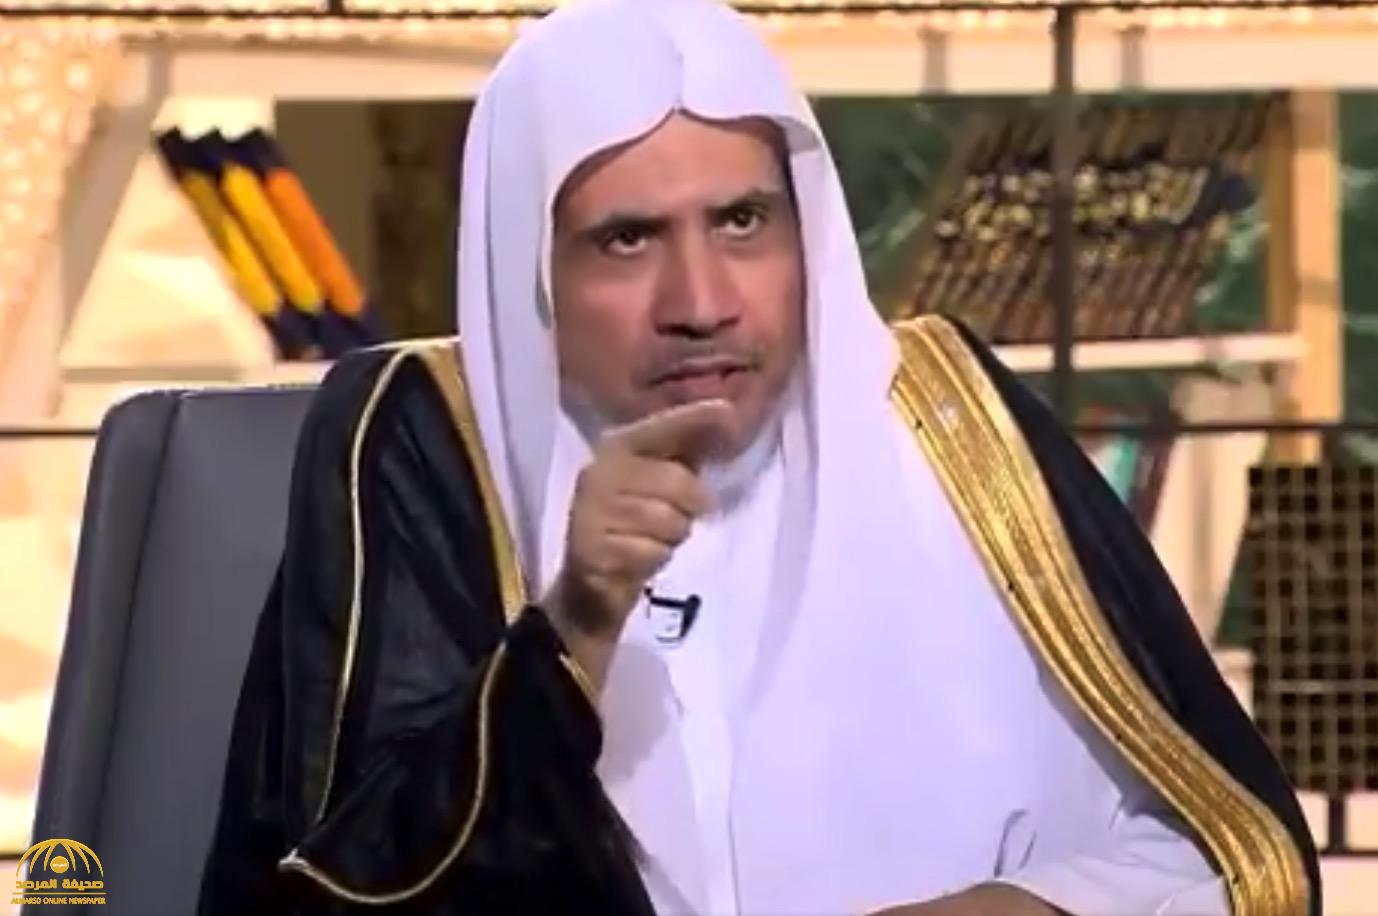 بالفيديو: "العيسى" يروي قصة مسلم يعمل في كنيسة فاجأه بطلب أثناء زيارته لأمريكا !